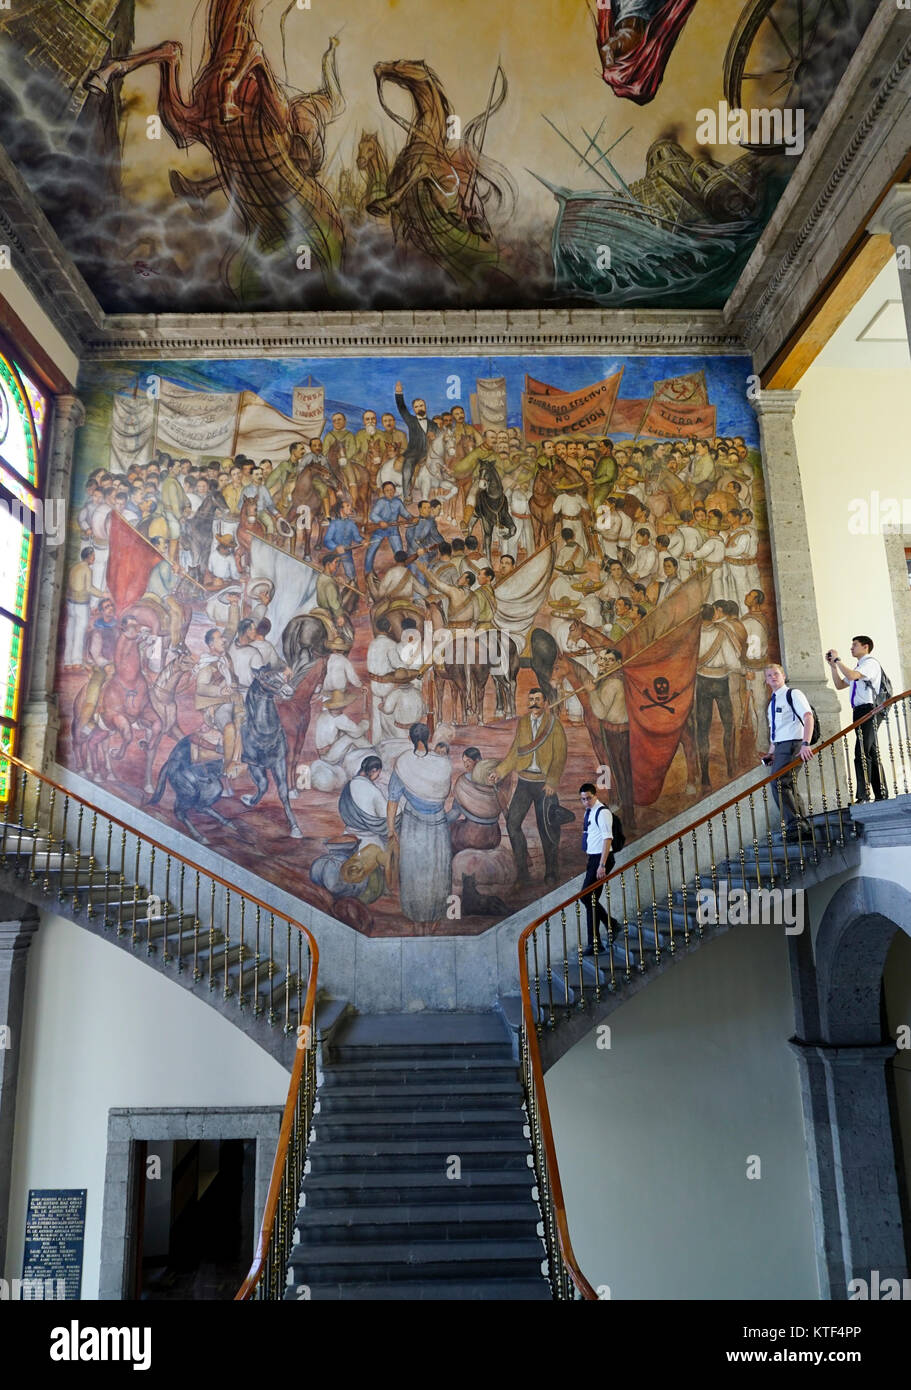 Musée national d'histoire à El Castillo de Chapultepec (château de Chapultepec), parc de Chapultepec, Mexico, Mexique. Banque D'Images